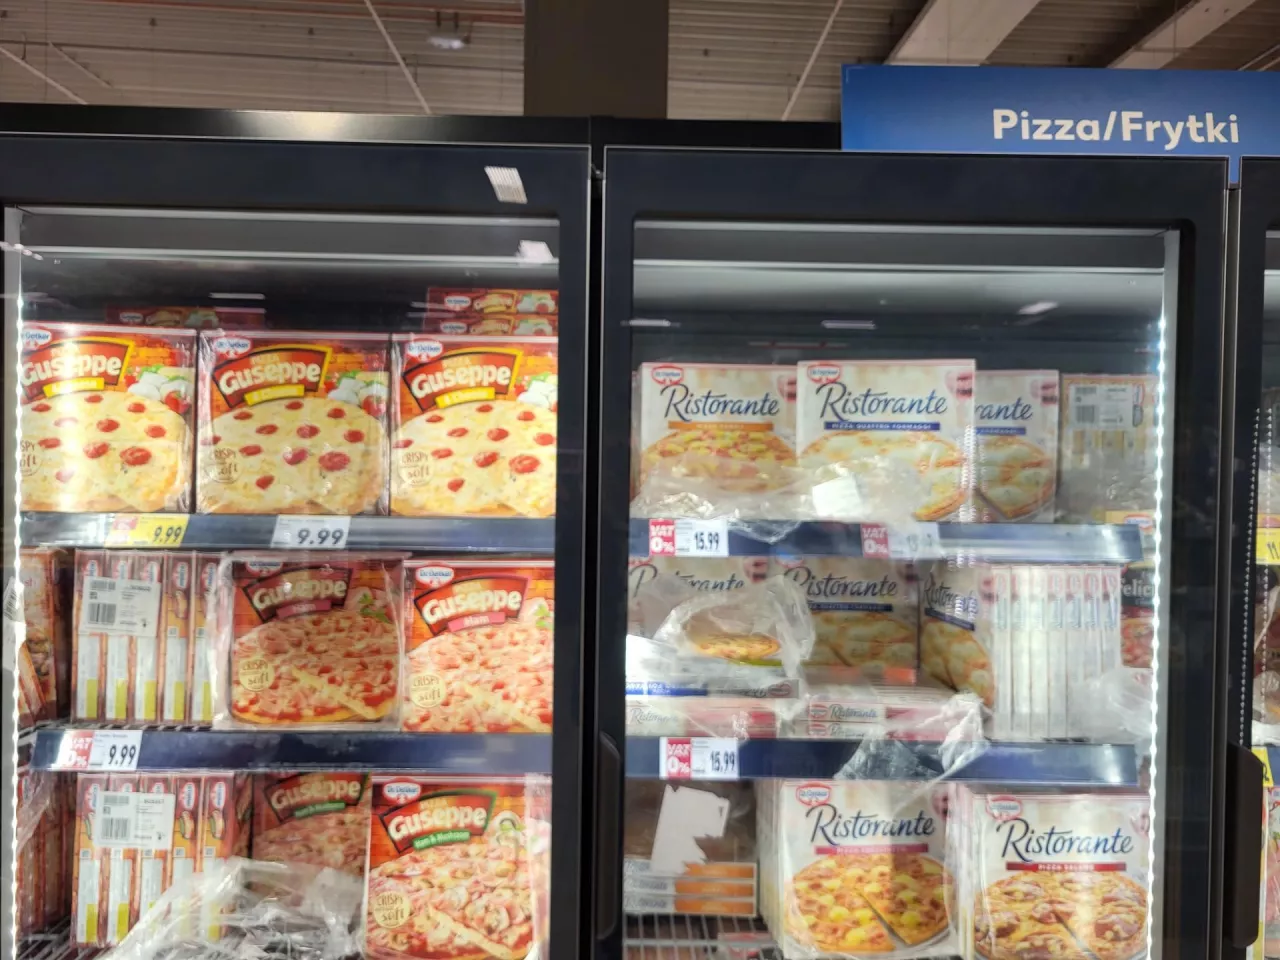 &lt;p&gt;Lada chłodnicza z pizzami w sklepie Kaufland (fot. Tomasz Kolmasiak)&lt;/p&gt;